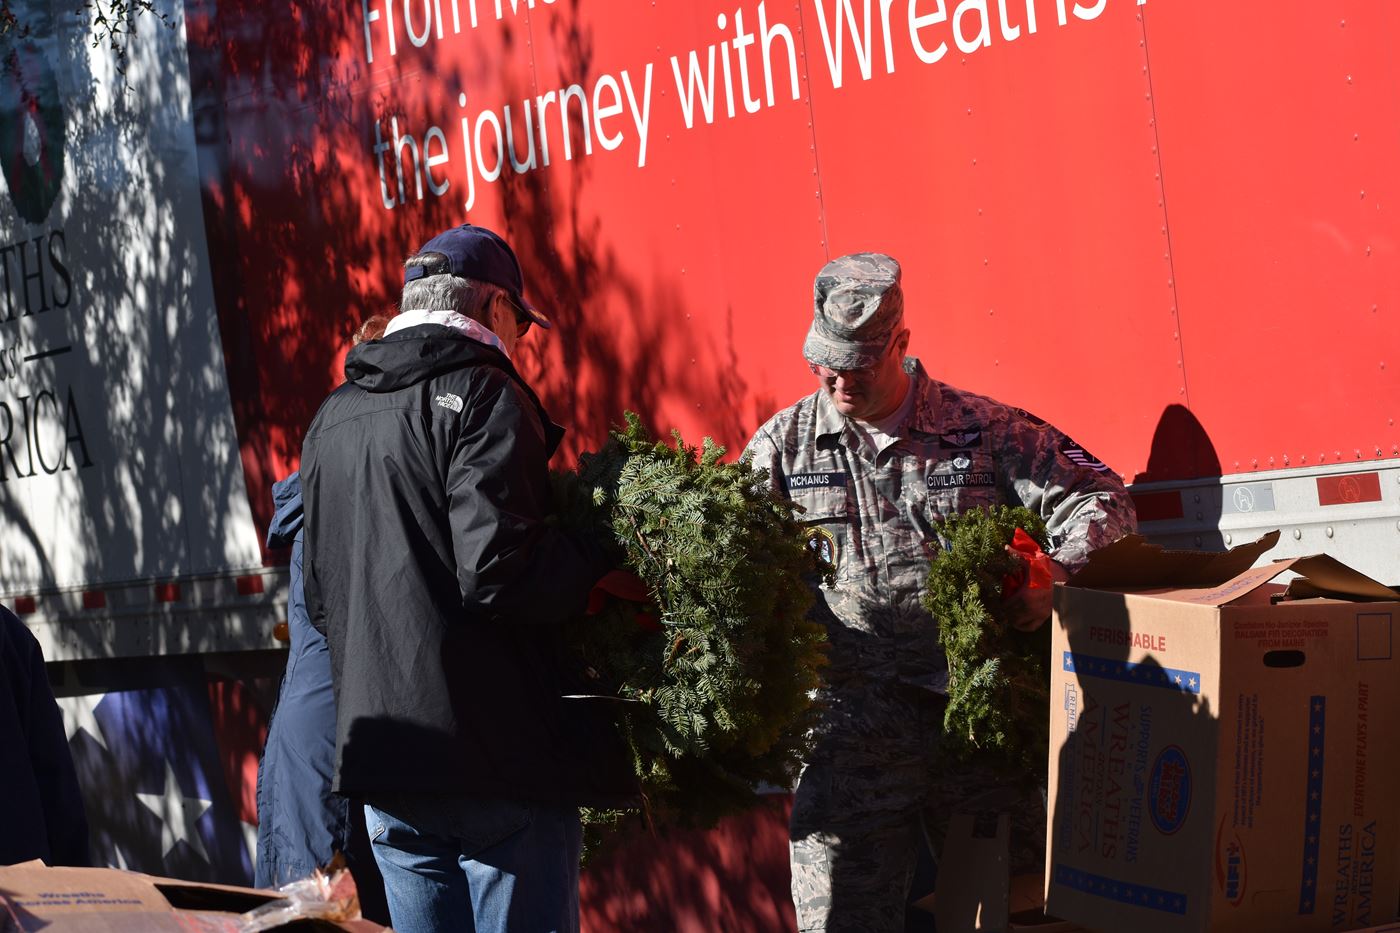 TSgt Dan McManus hands wreaths to another community volunteers